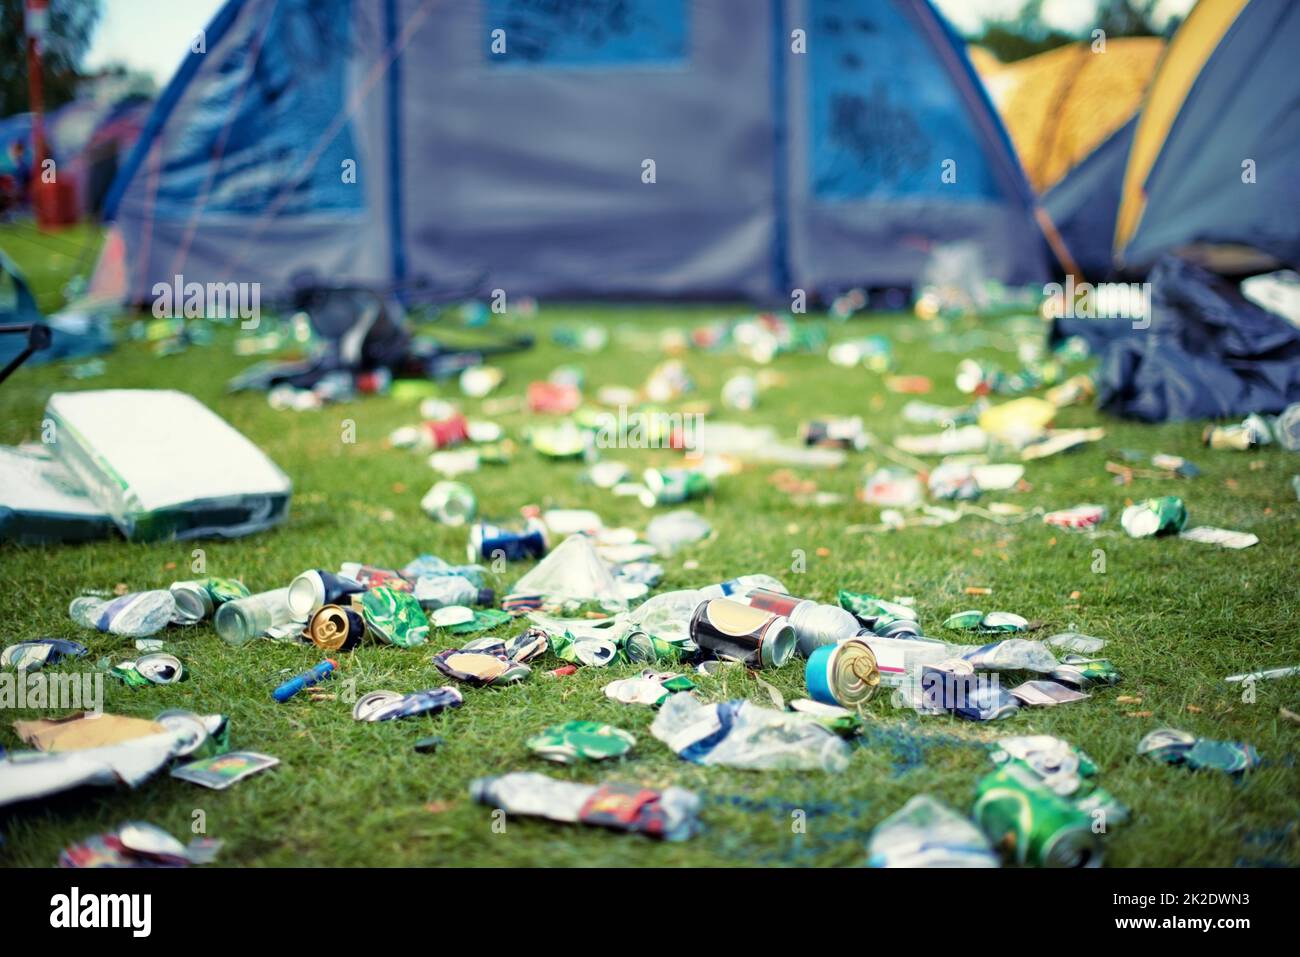 Les effets d'un festival. Photo de déchets dans un festival. Banque D'Images